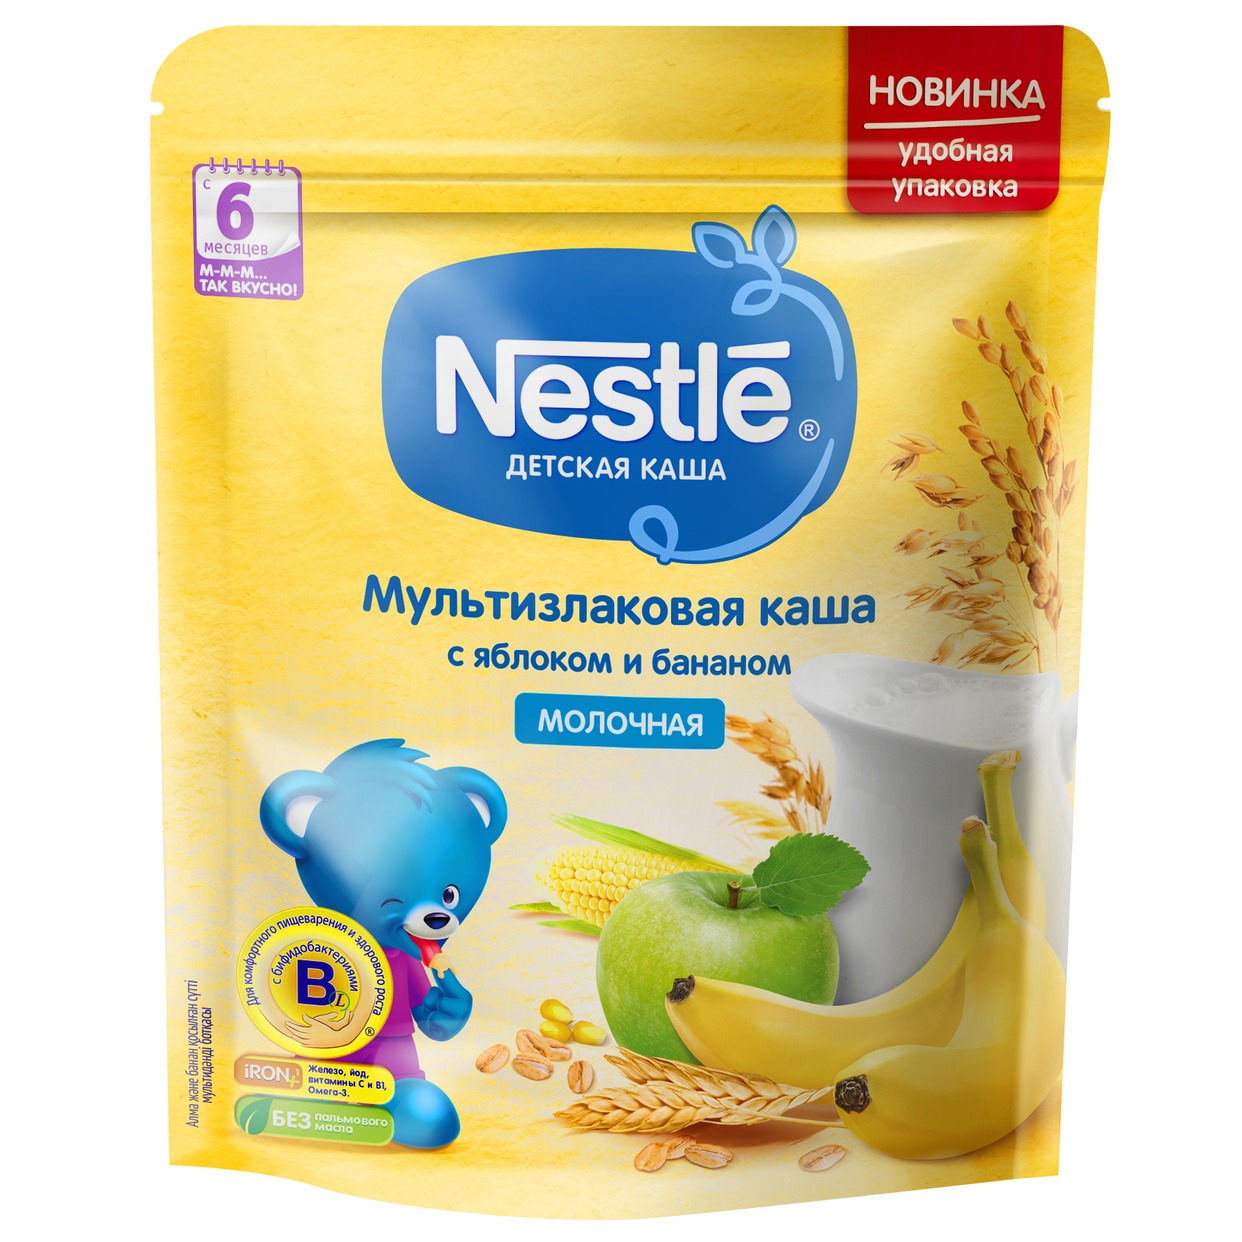 Каша Nestle Мультизлаковая с яблоком и бананом 220г по акции в Пятерочке